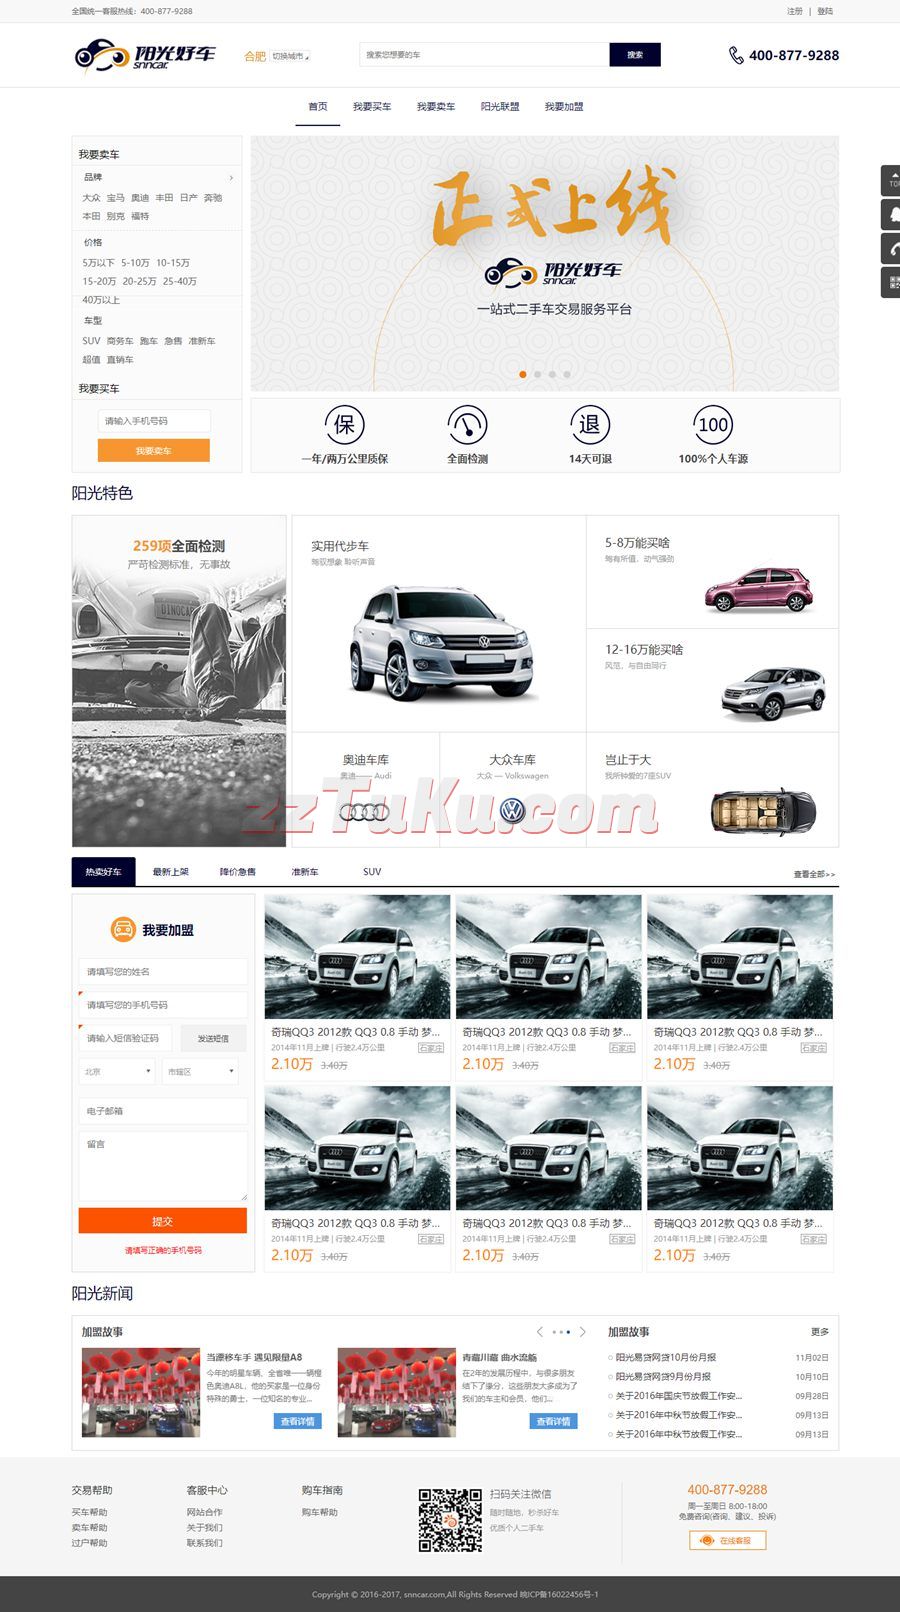 大气的二手车买卖交易平台全套HTML网站模板